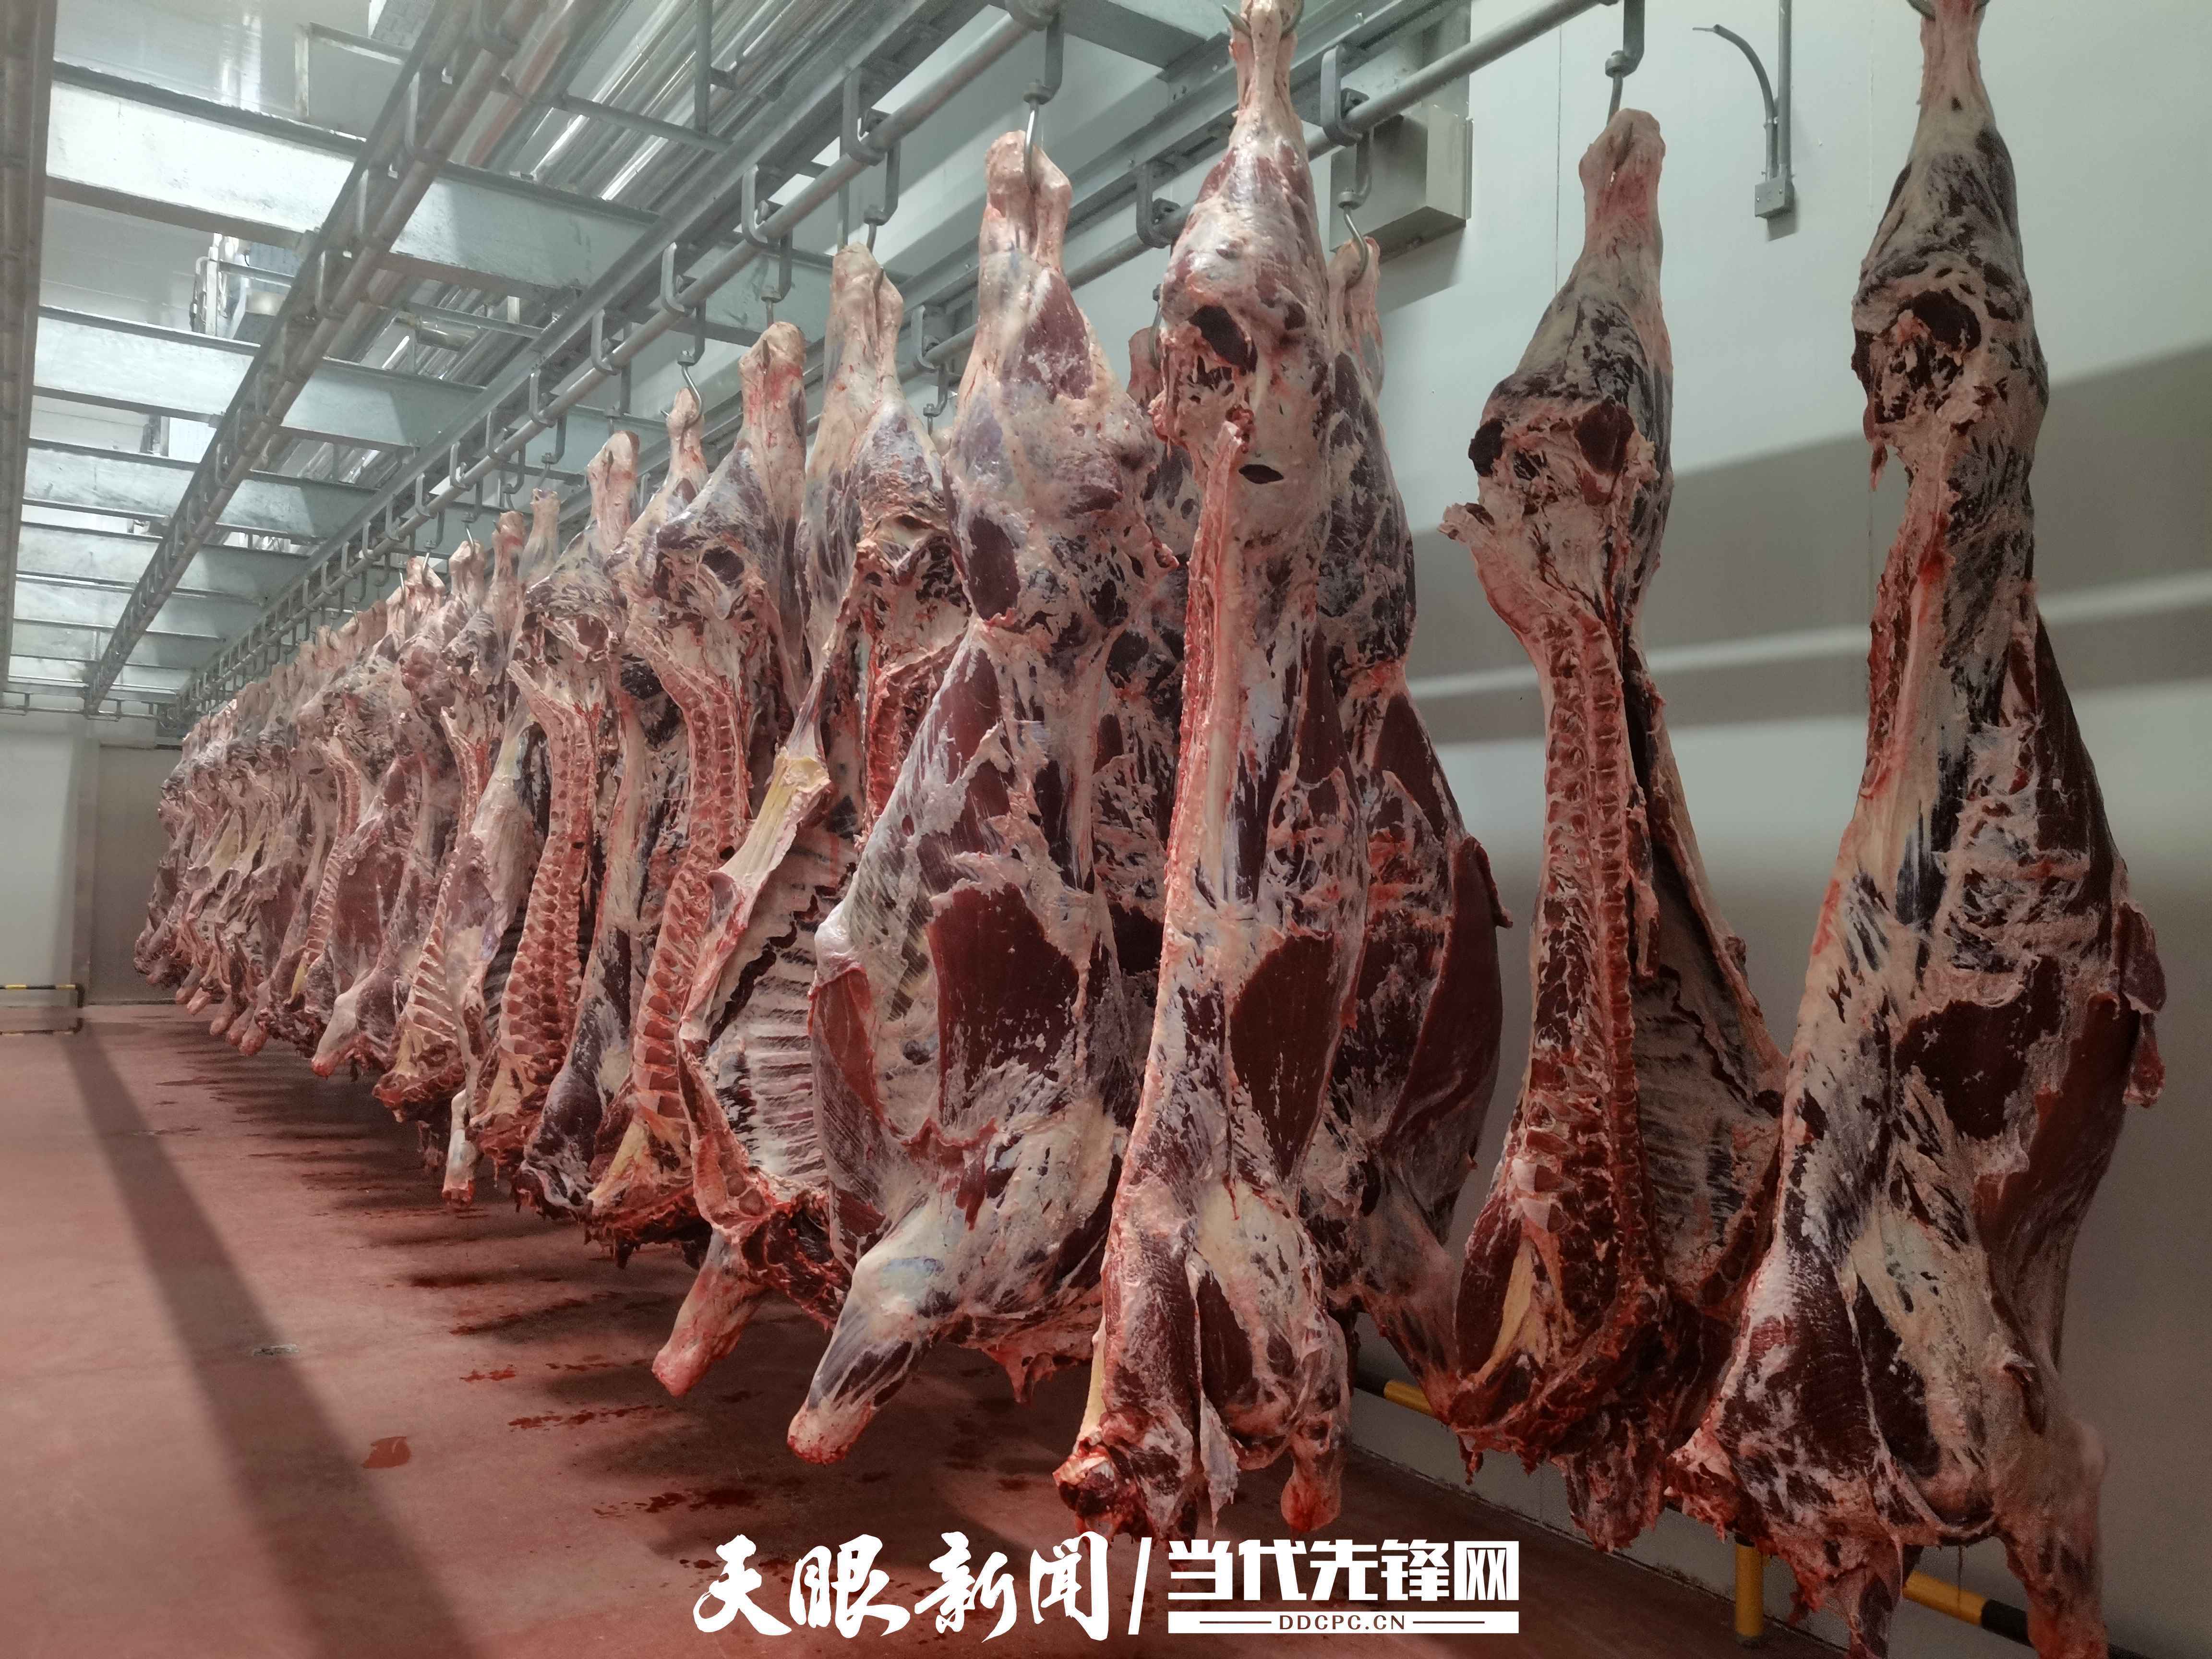 刚屠宰的牛肉目前,贵阳市新冠肺炎疫情形势严峻,9月3日,贵州黄牛产业